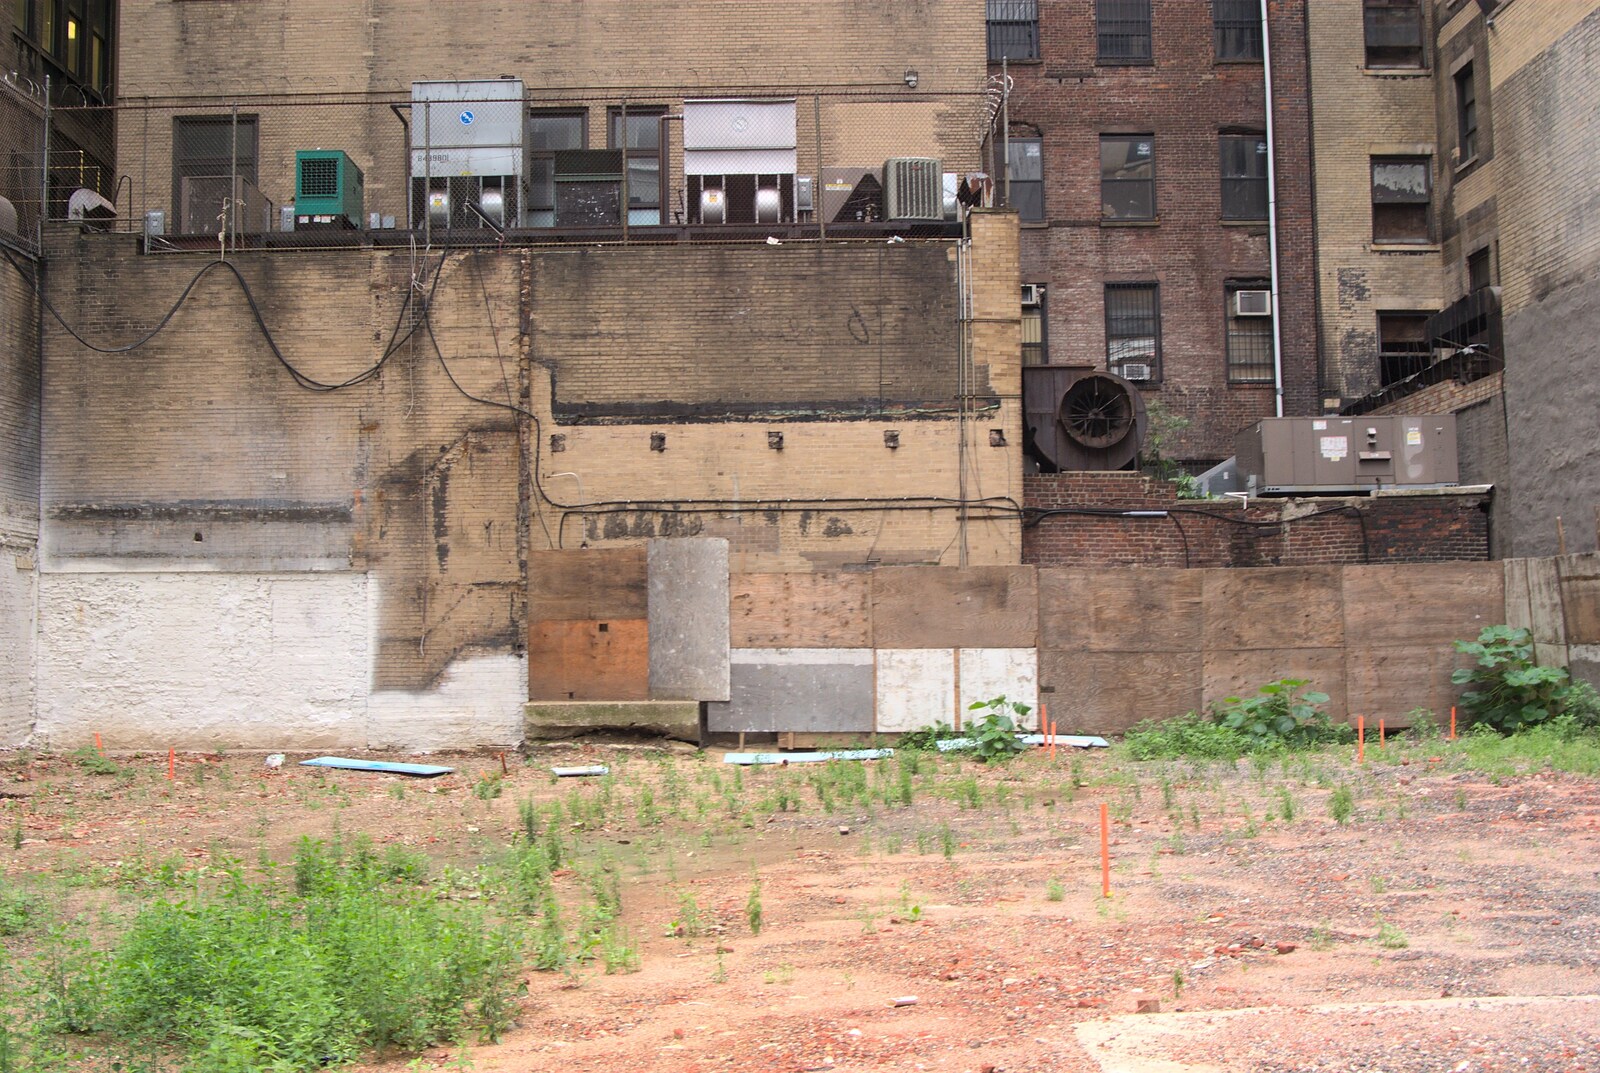 More Manhattan dereliction from A Manhattan Hotdog, New York, USA - 21st August 2011